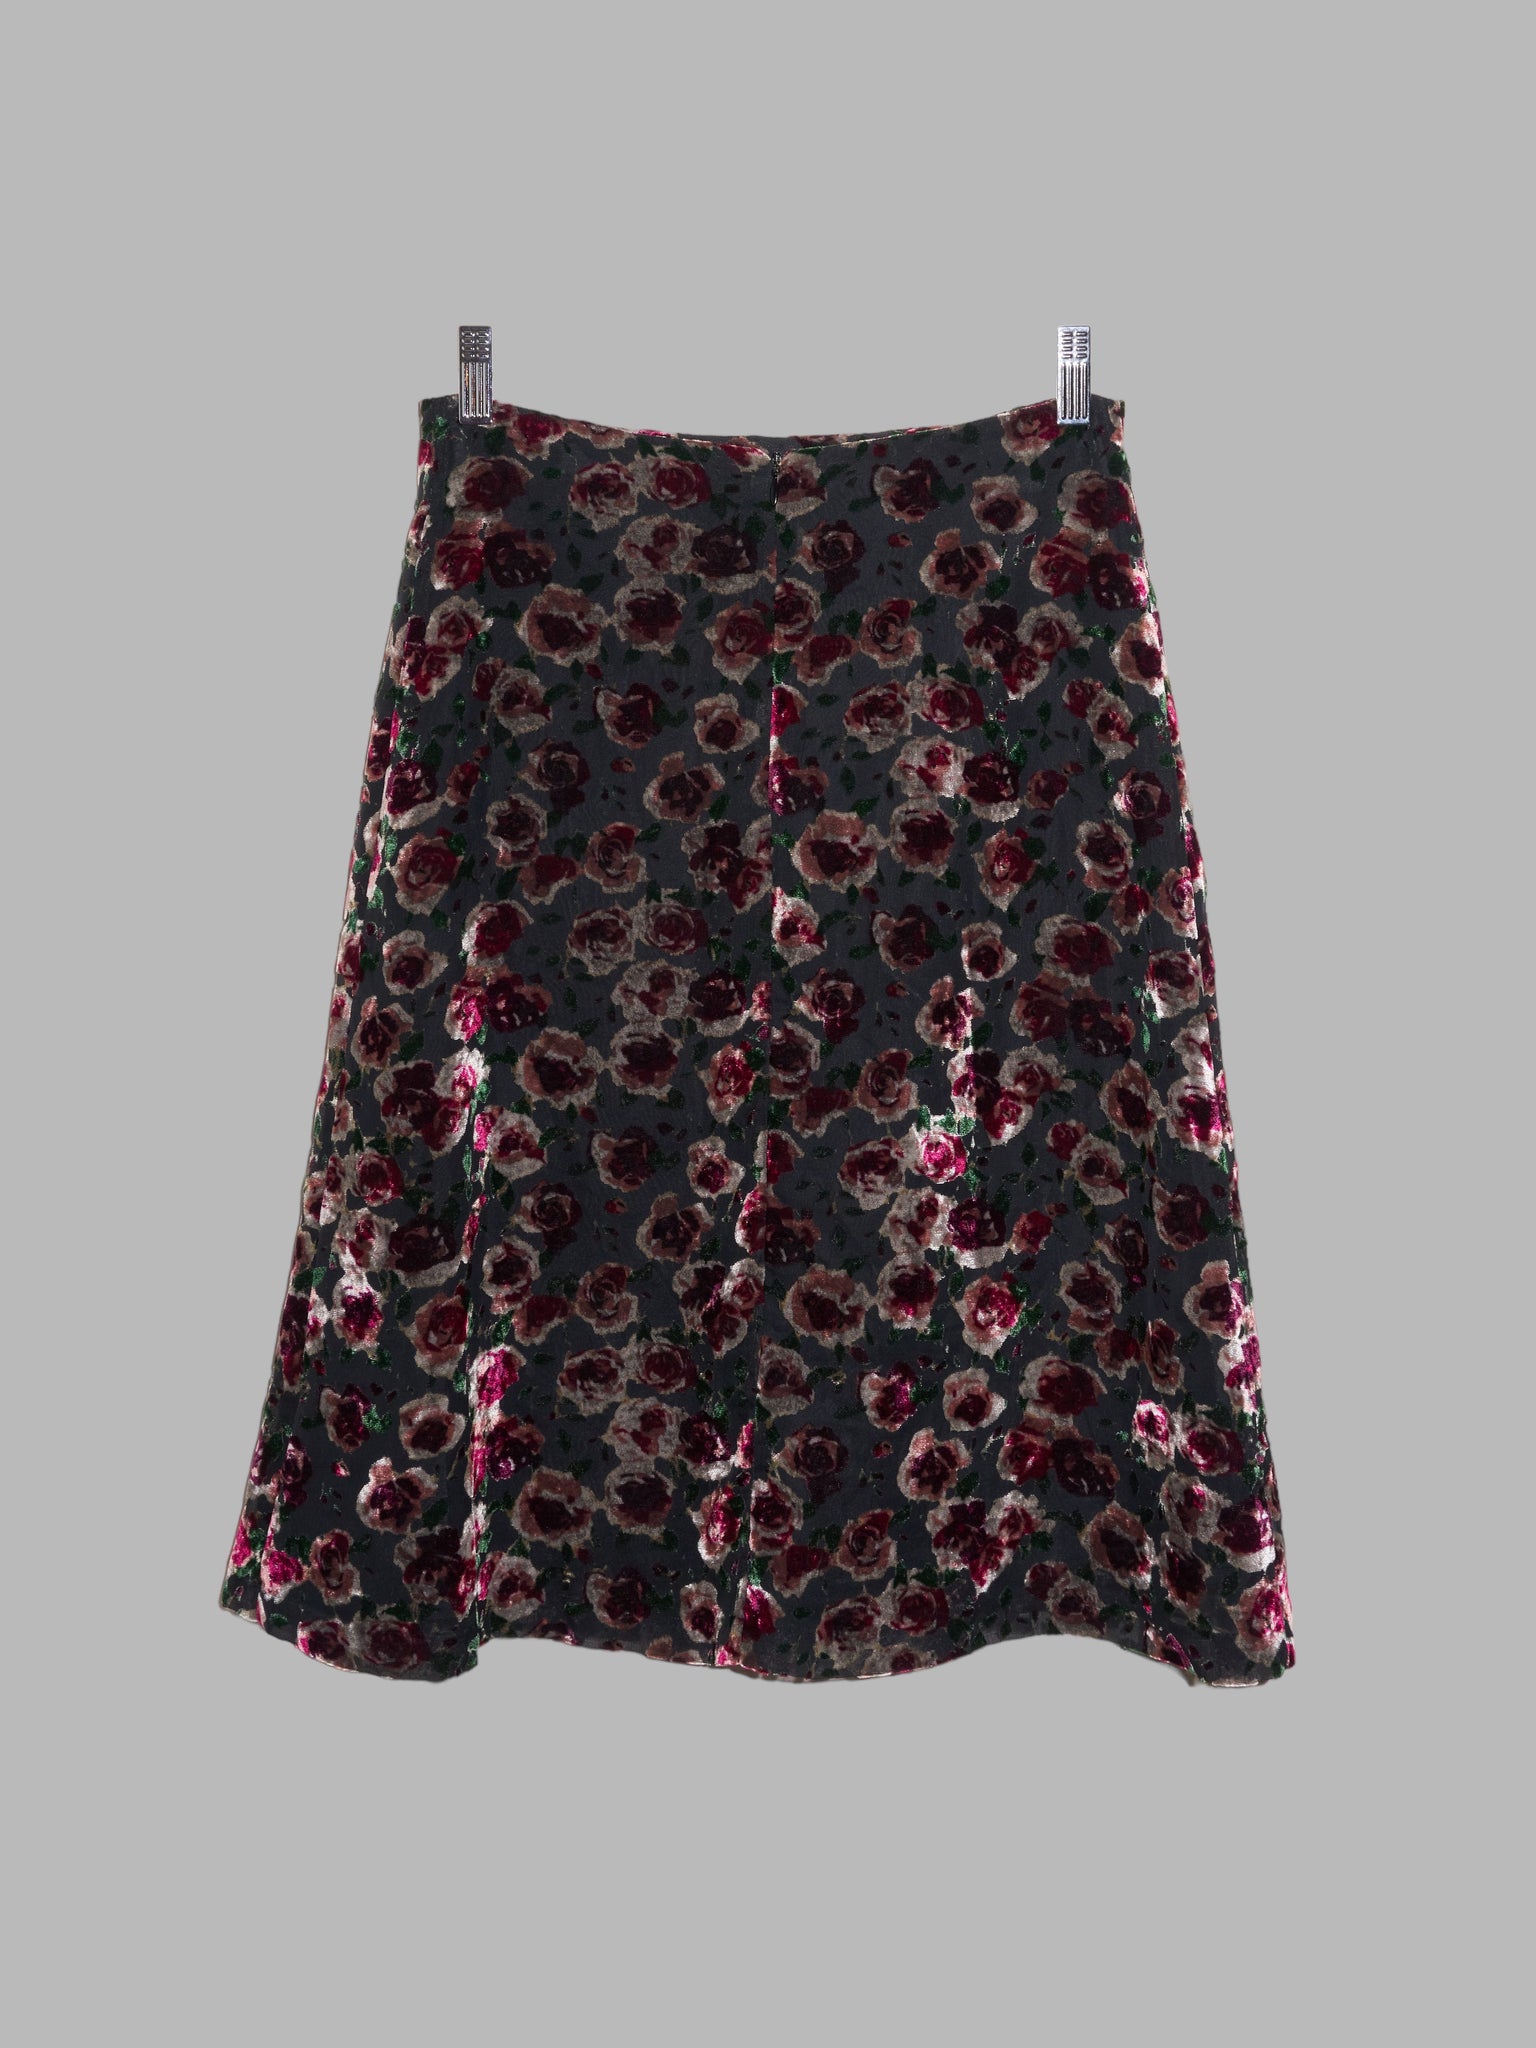 Corinne Cobson 1990s floral velvet devore burnout knee length skirt